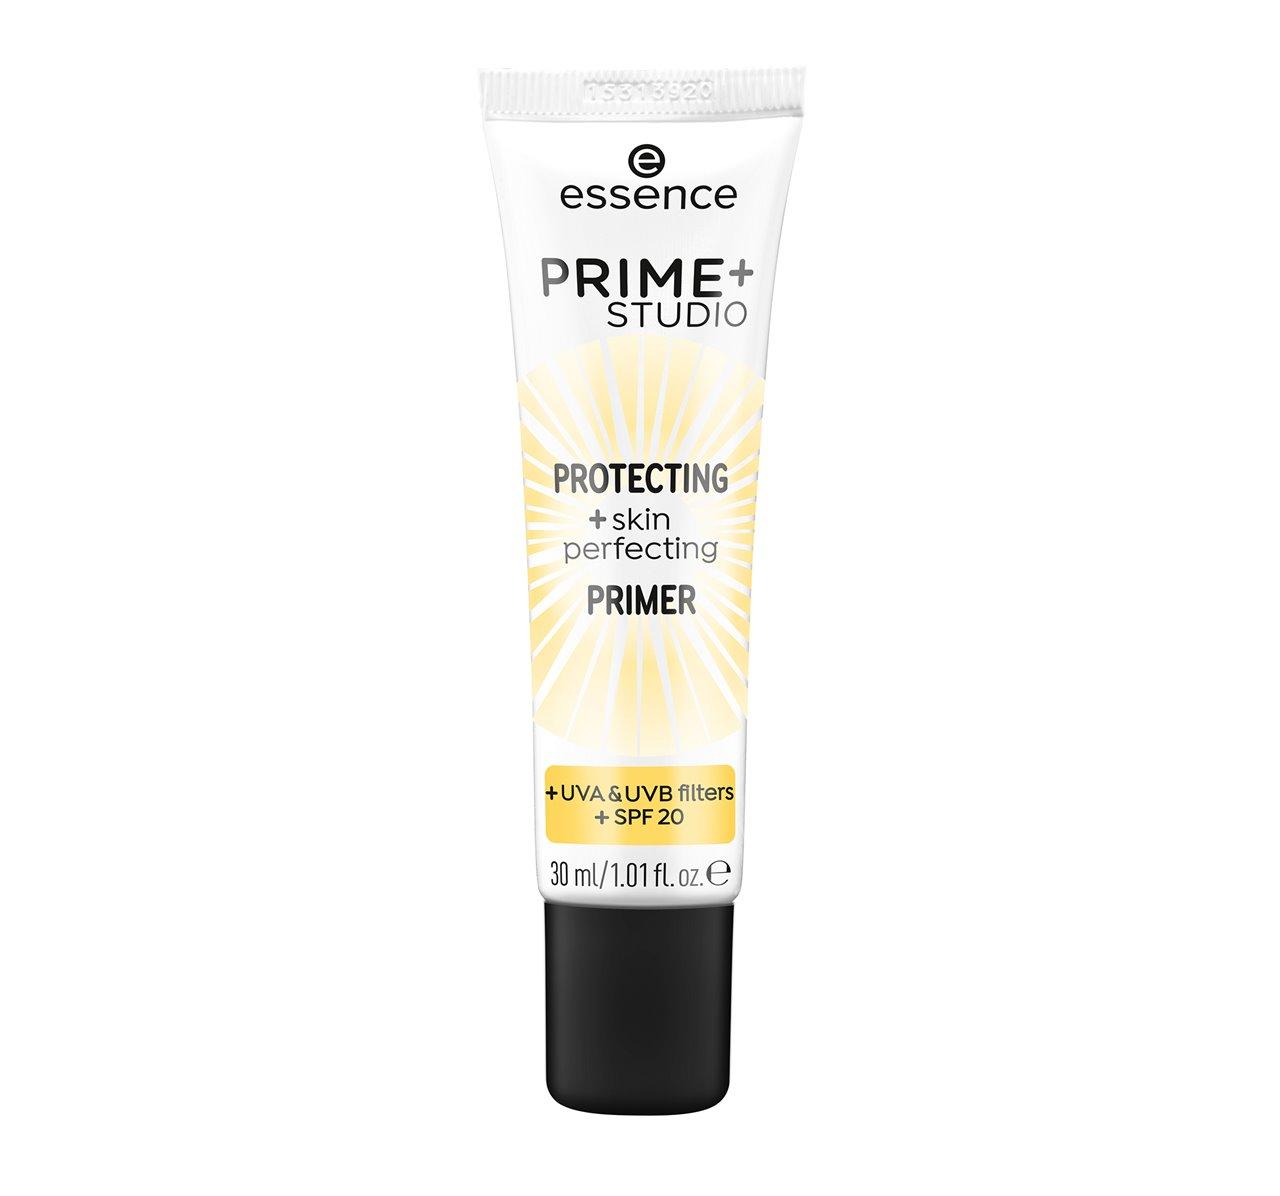 Prime + Studio Protecting + Skin Perfecting Primer